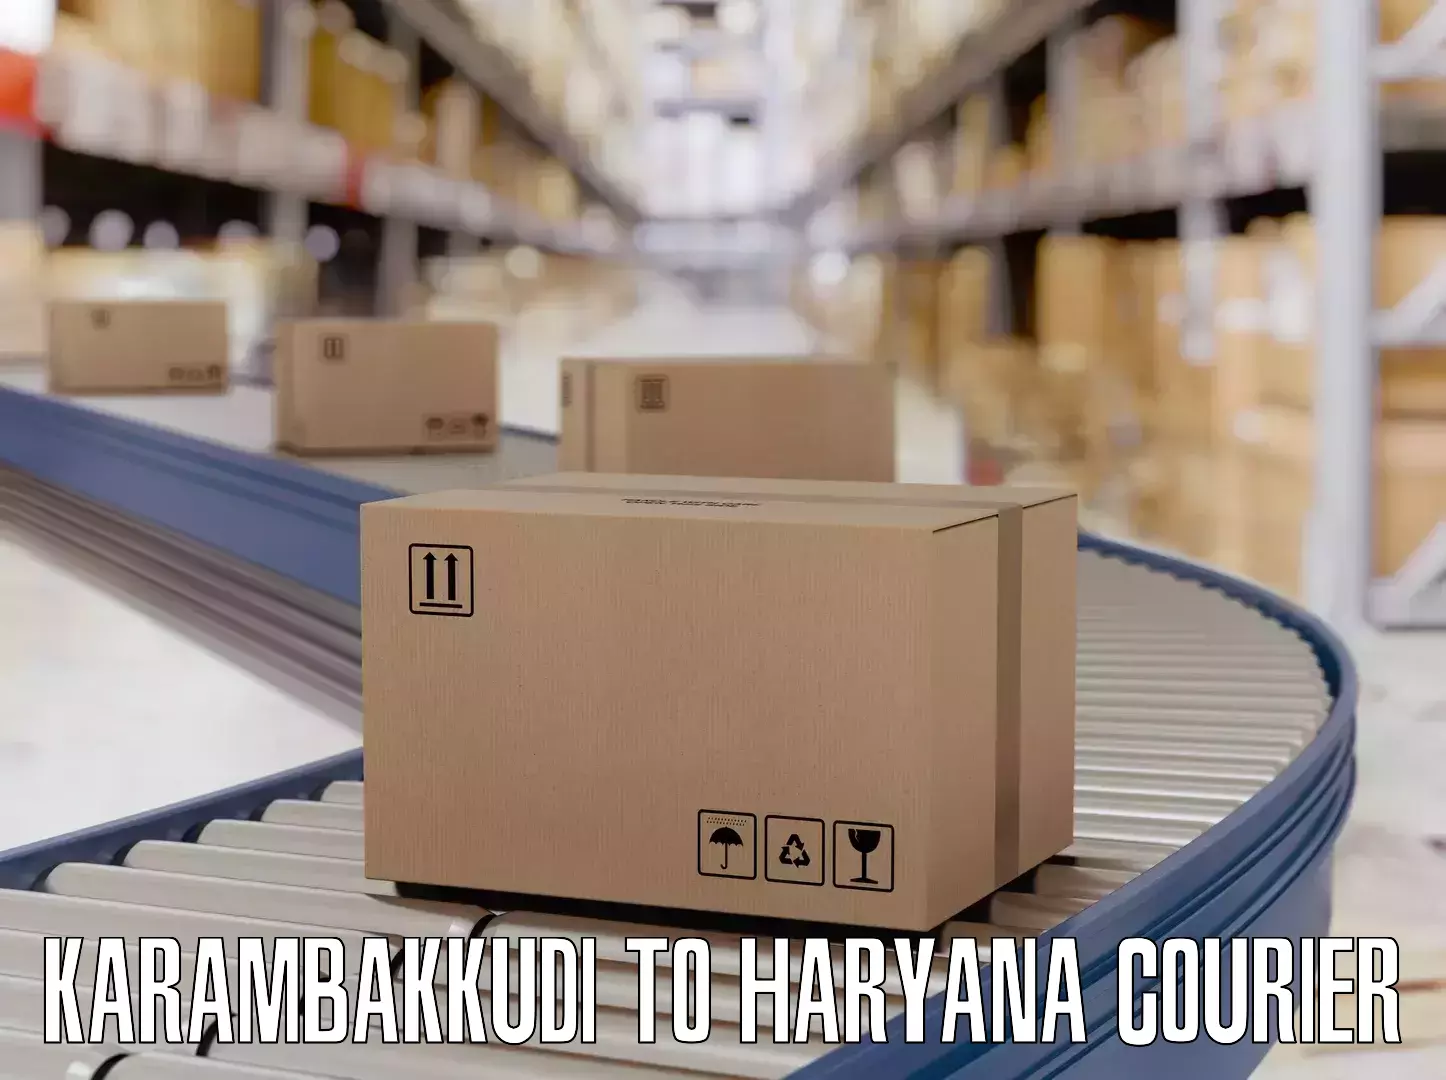 Luggage shipment strategy Karambakkudi to Pataudi